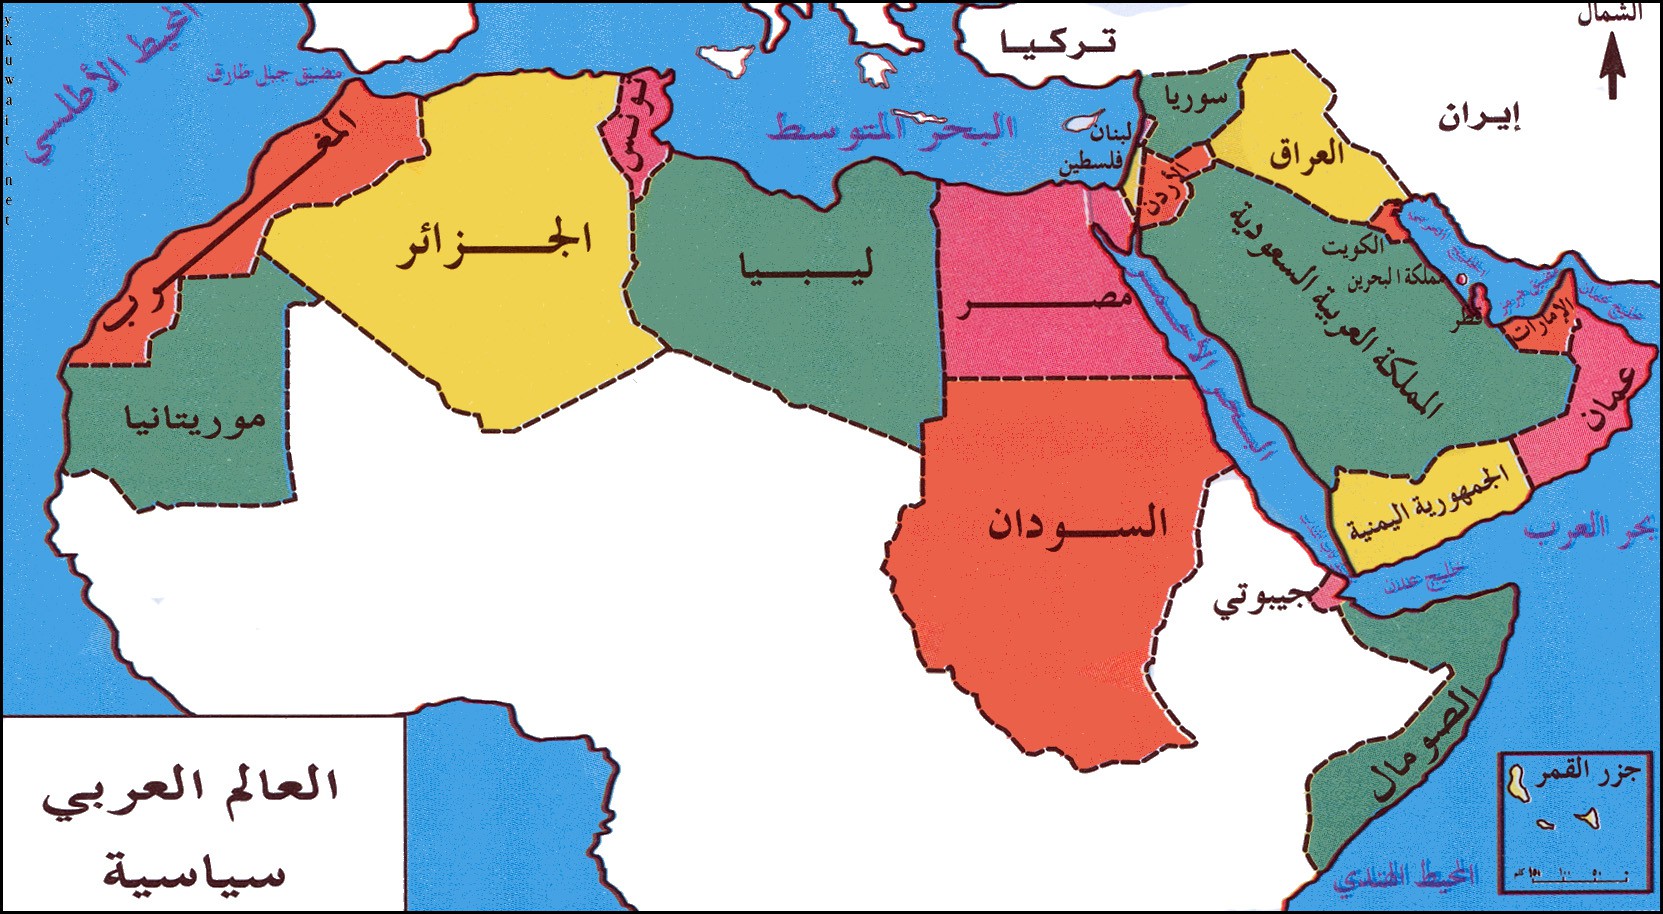 إشكاليات “الاشتباك” الدولي في المنطقة العربية